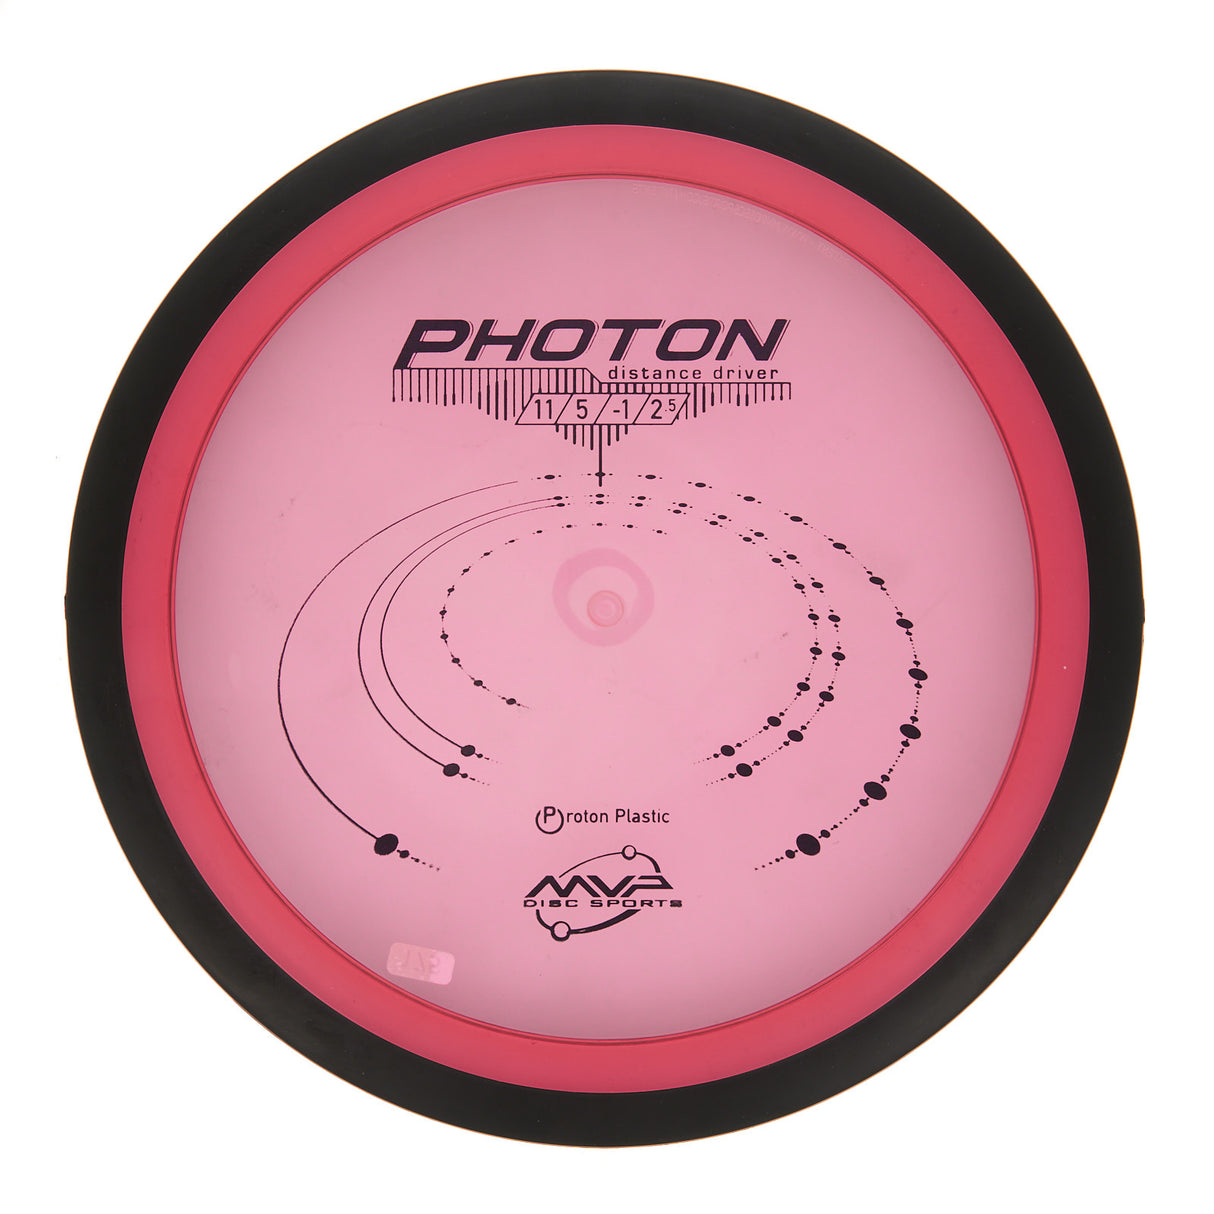 MVP Photon - Proton 177g | Style 0001